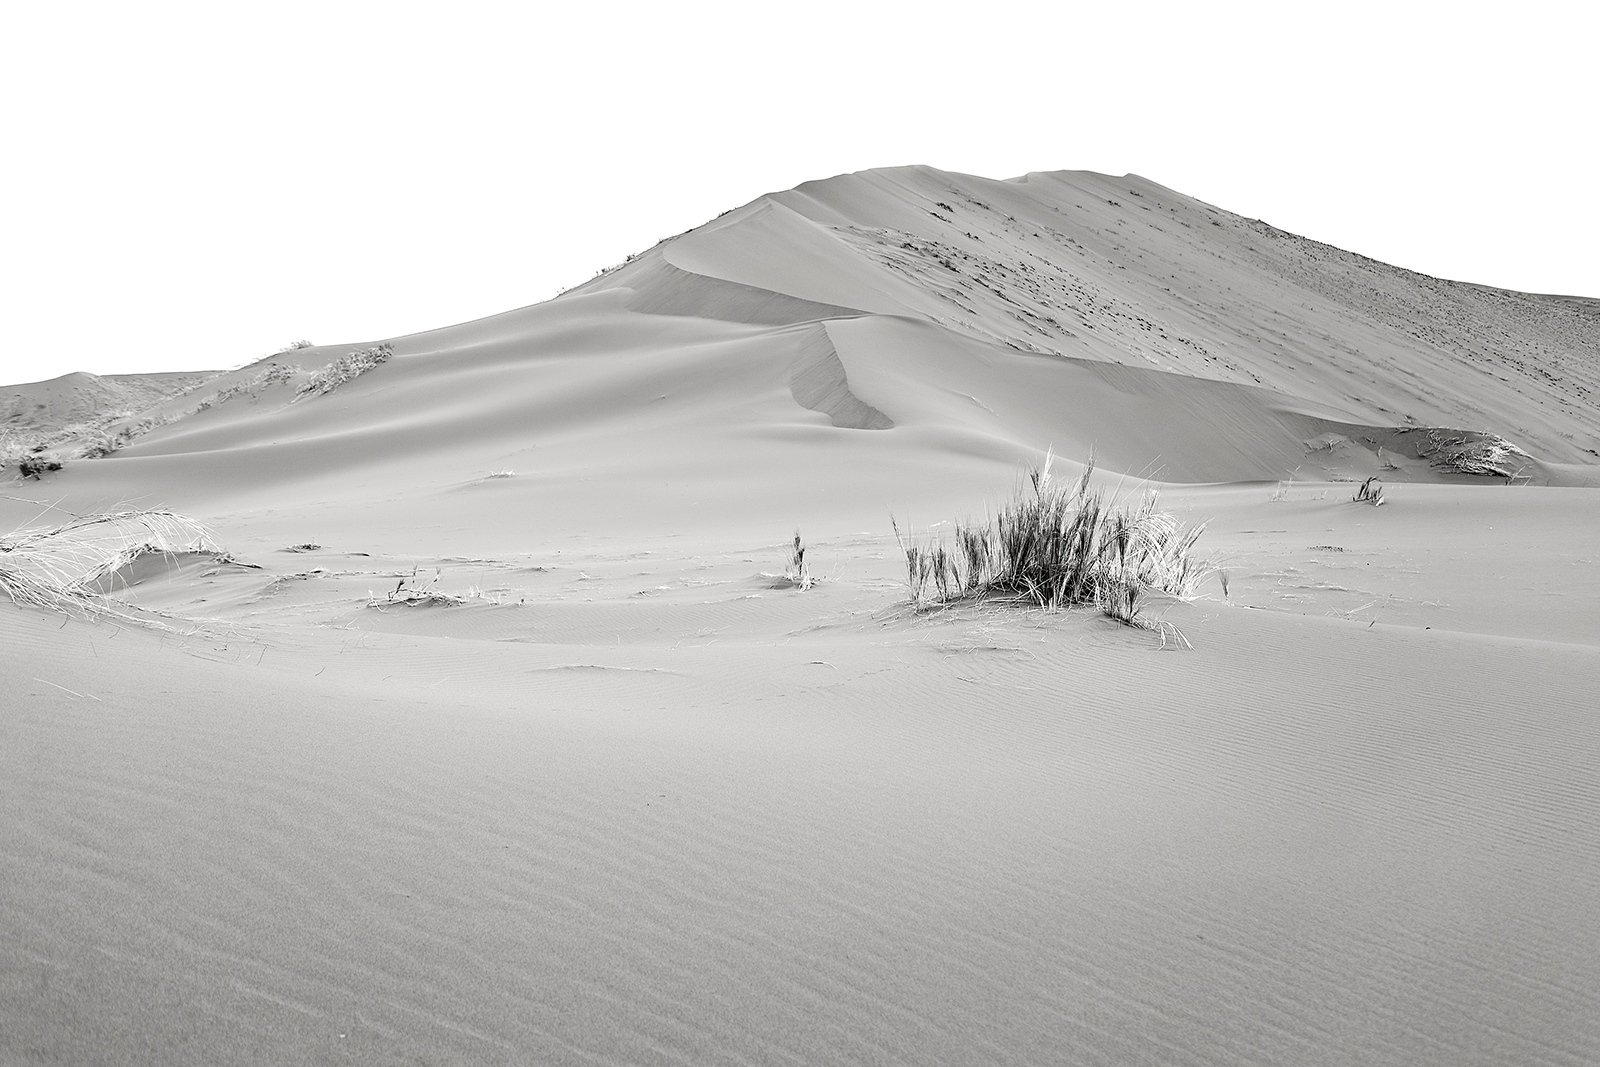 Dunes. The surreal landscape